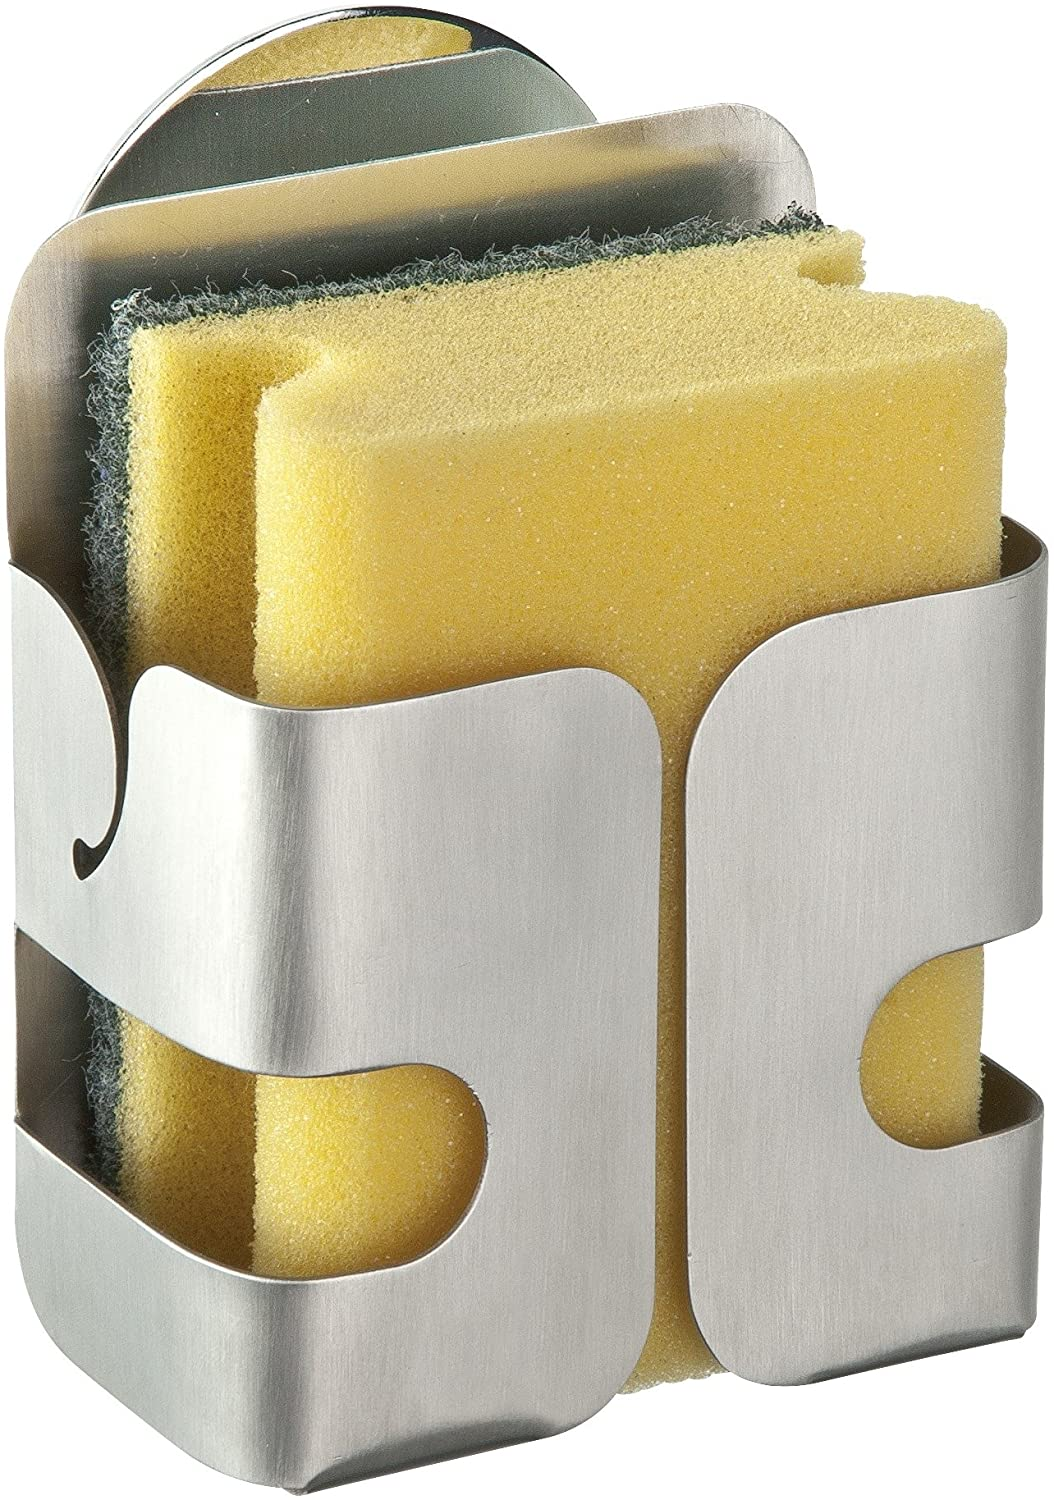 Turbo-Loc® Edelstahl Schwammhalter - Befestigen ohne bohren, Edelstahl rostfrei, 8.1 x 11 x 5.3 cm, Silber matt